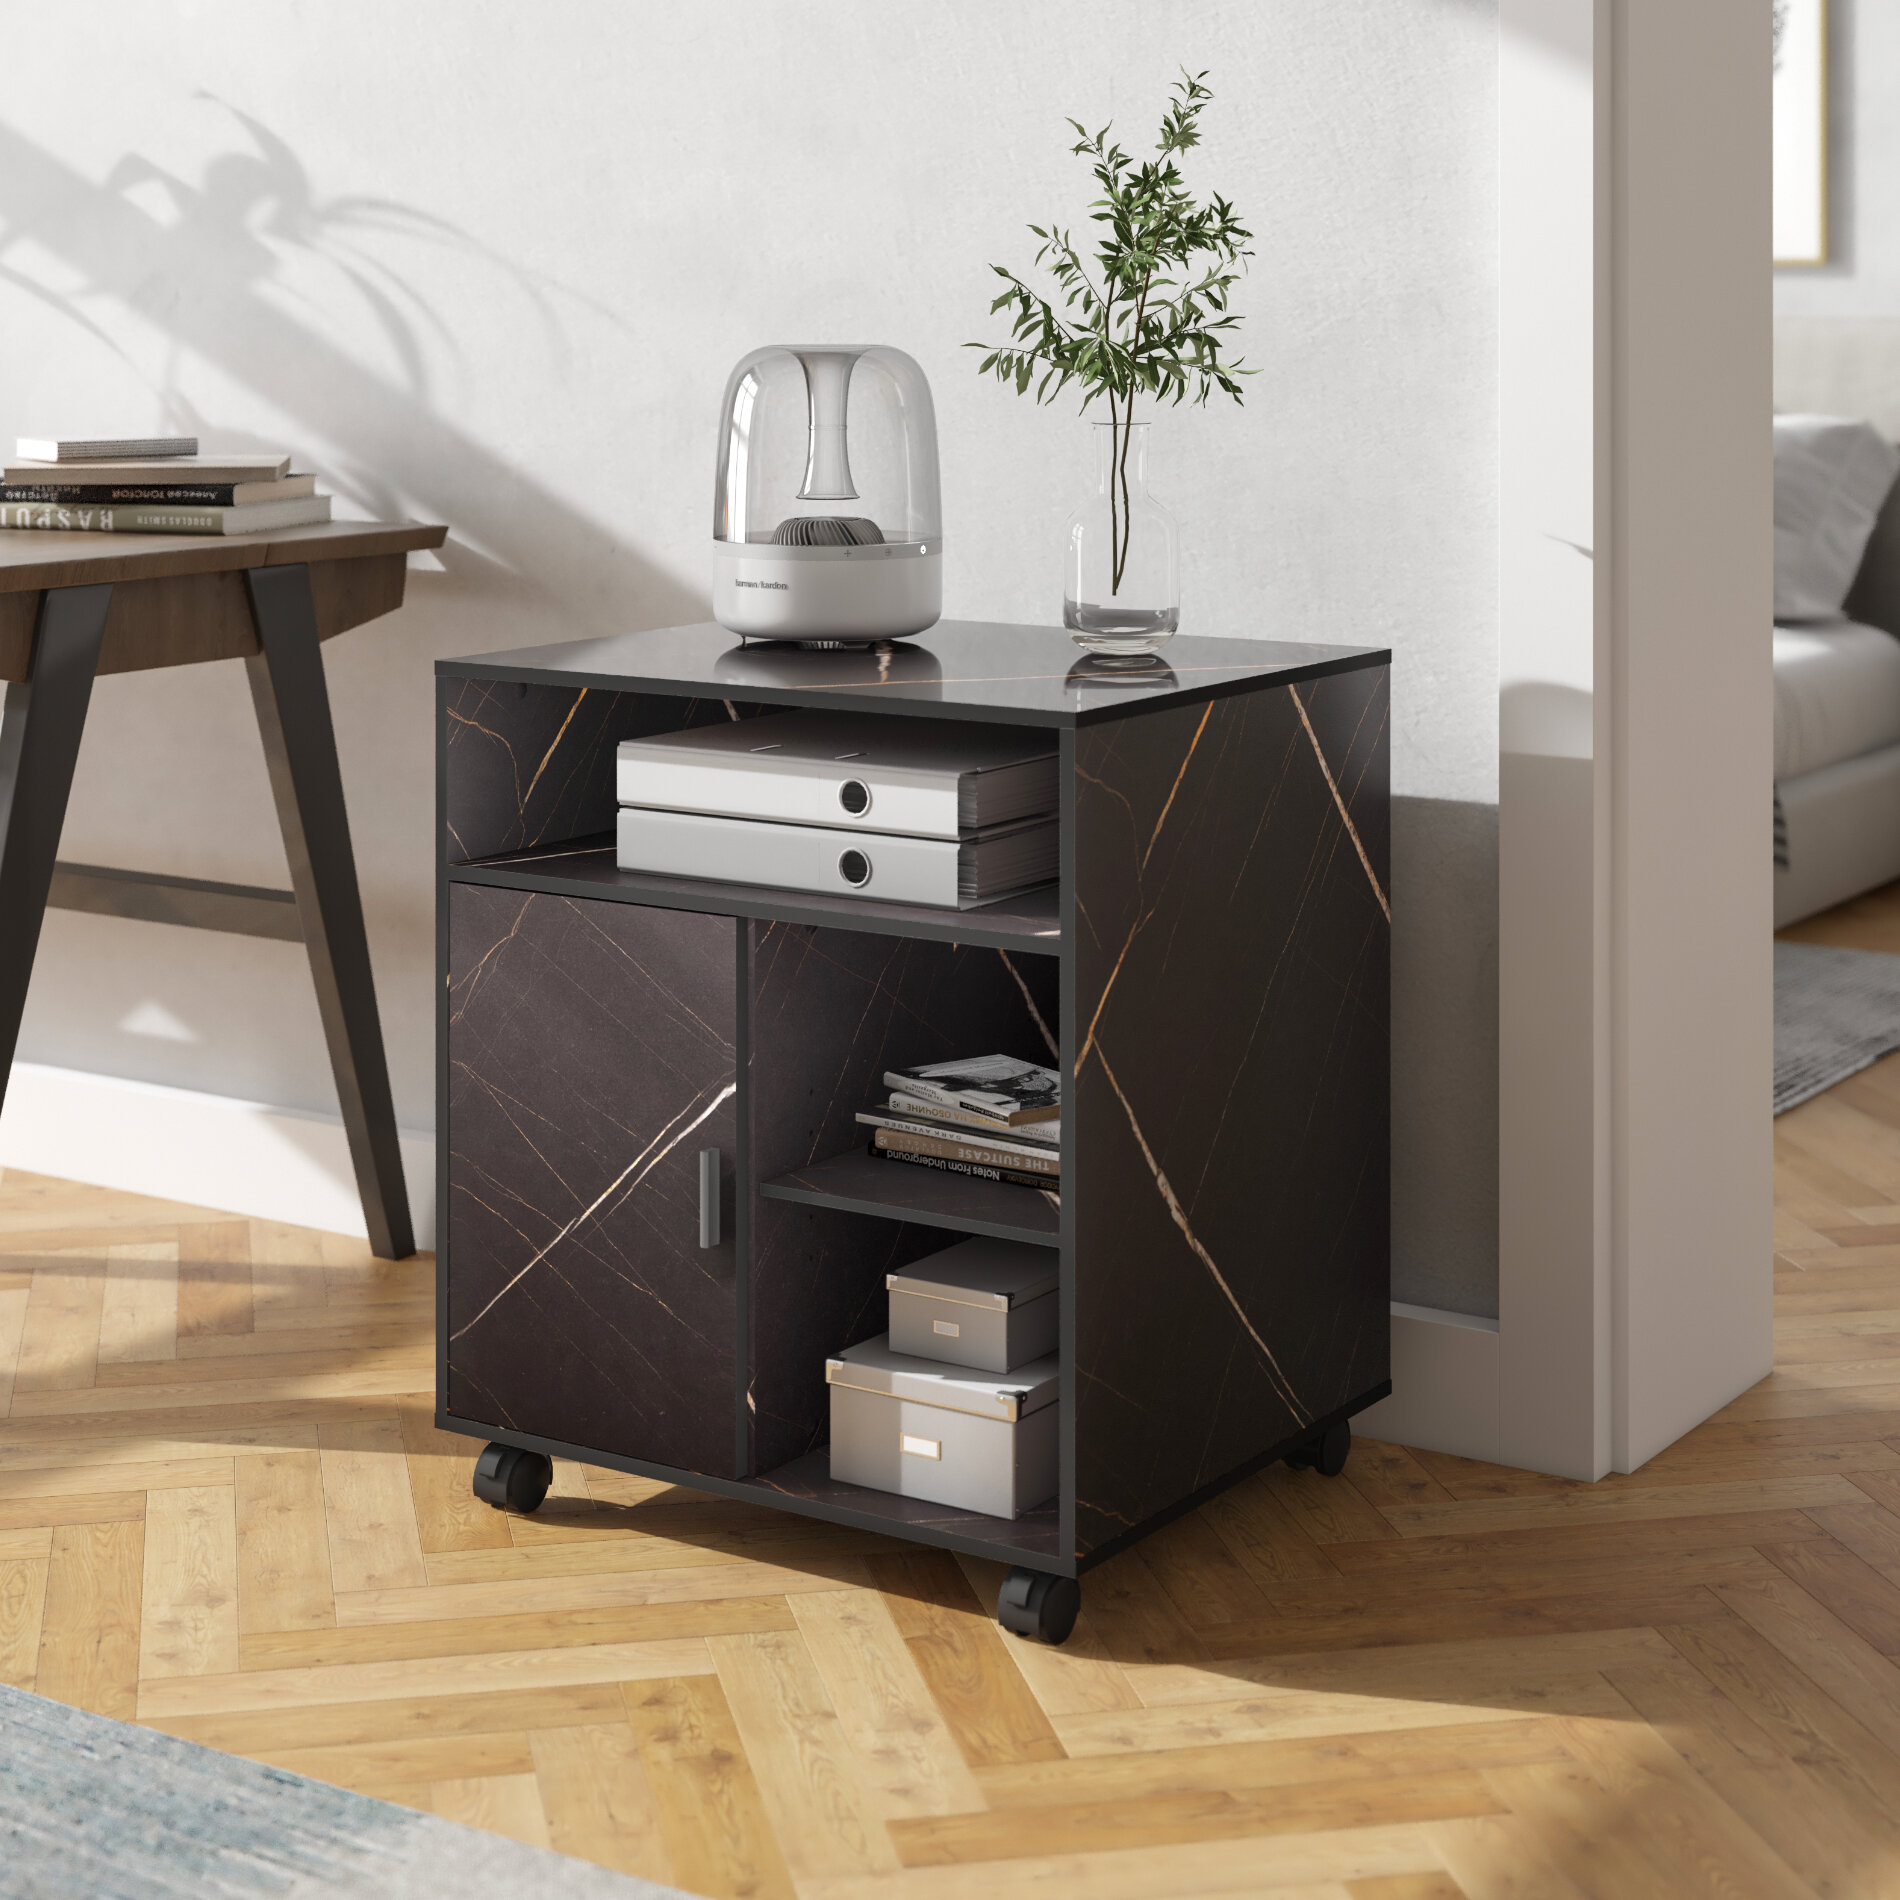 Black Wood Printer Stand With Adjustable Storage Black Wood Work Cart On Wheels 